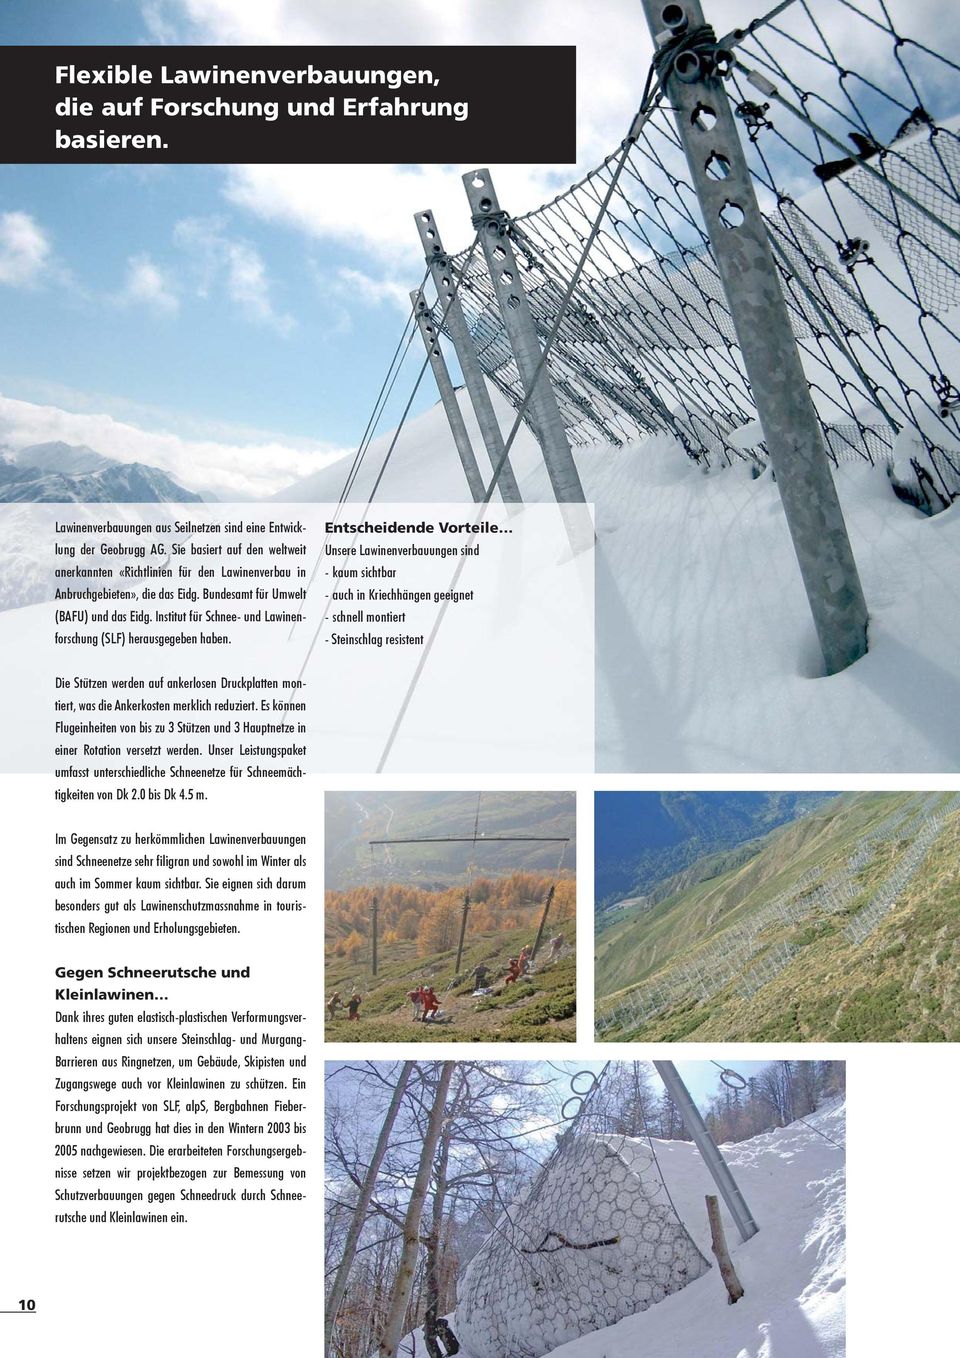 Institut für Schnee- und Lawinenforschung (SLF) herausgegeben haben.